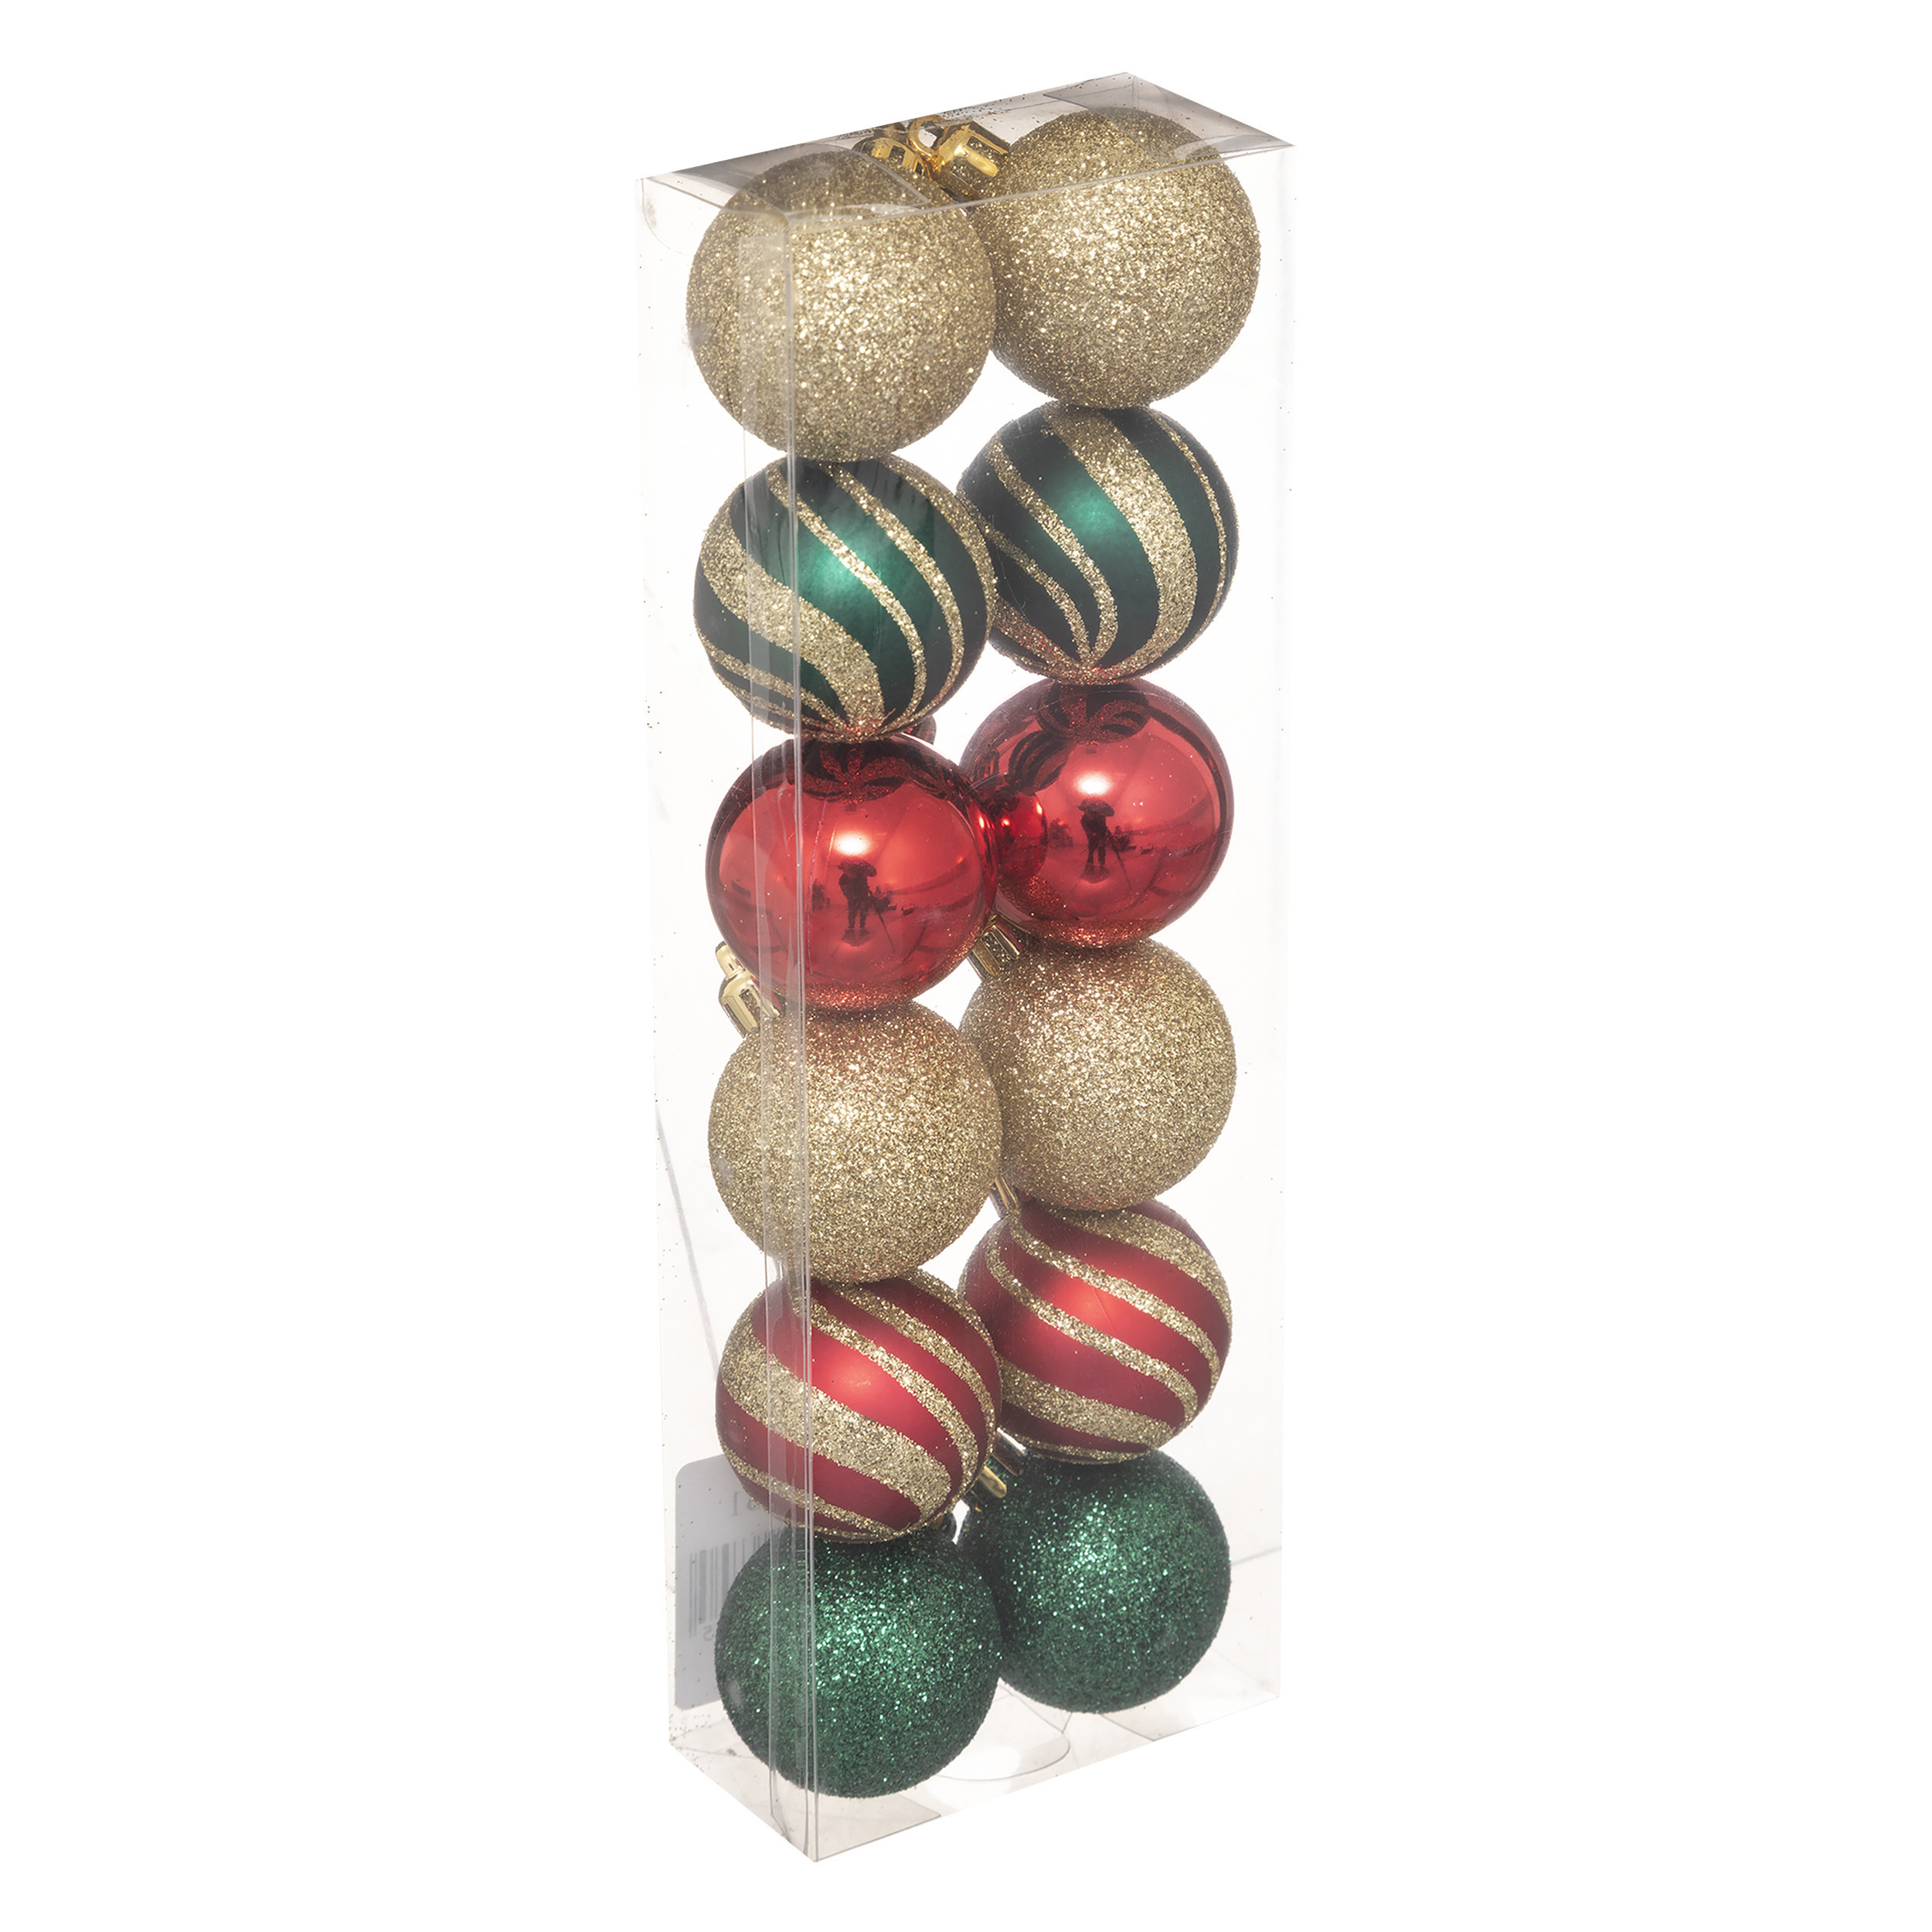 12x stuks kerstballen mix goud-rood-groen glans-mat-glitter kunststof 4 cm